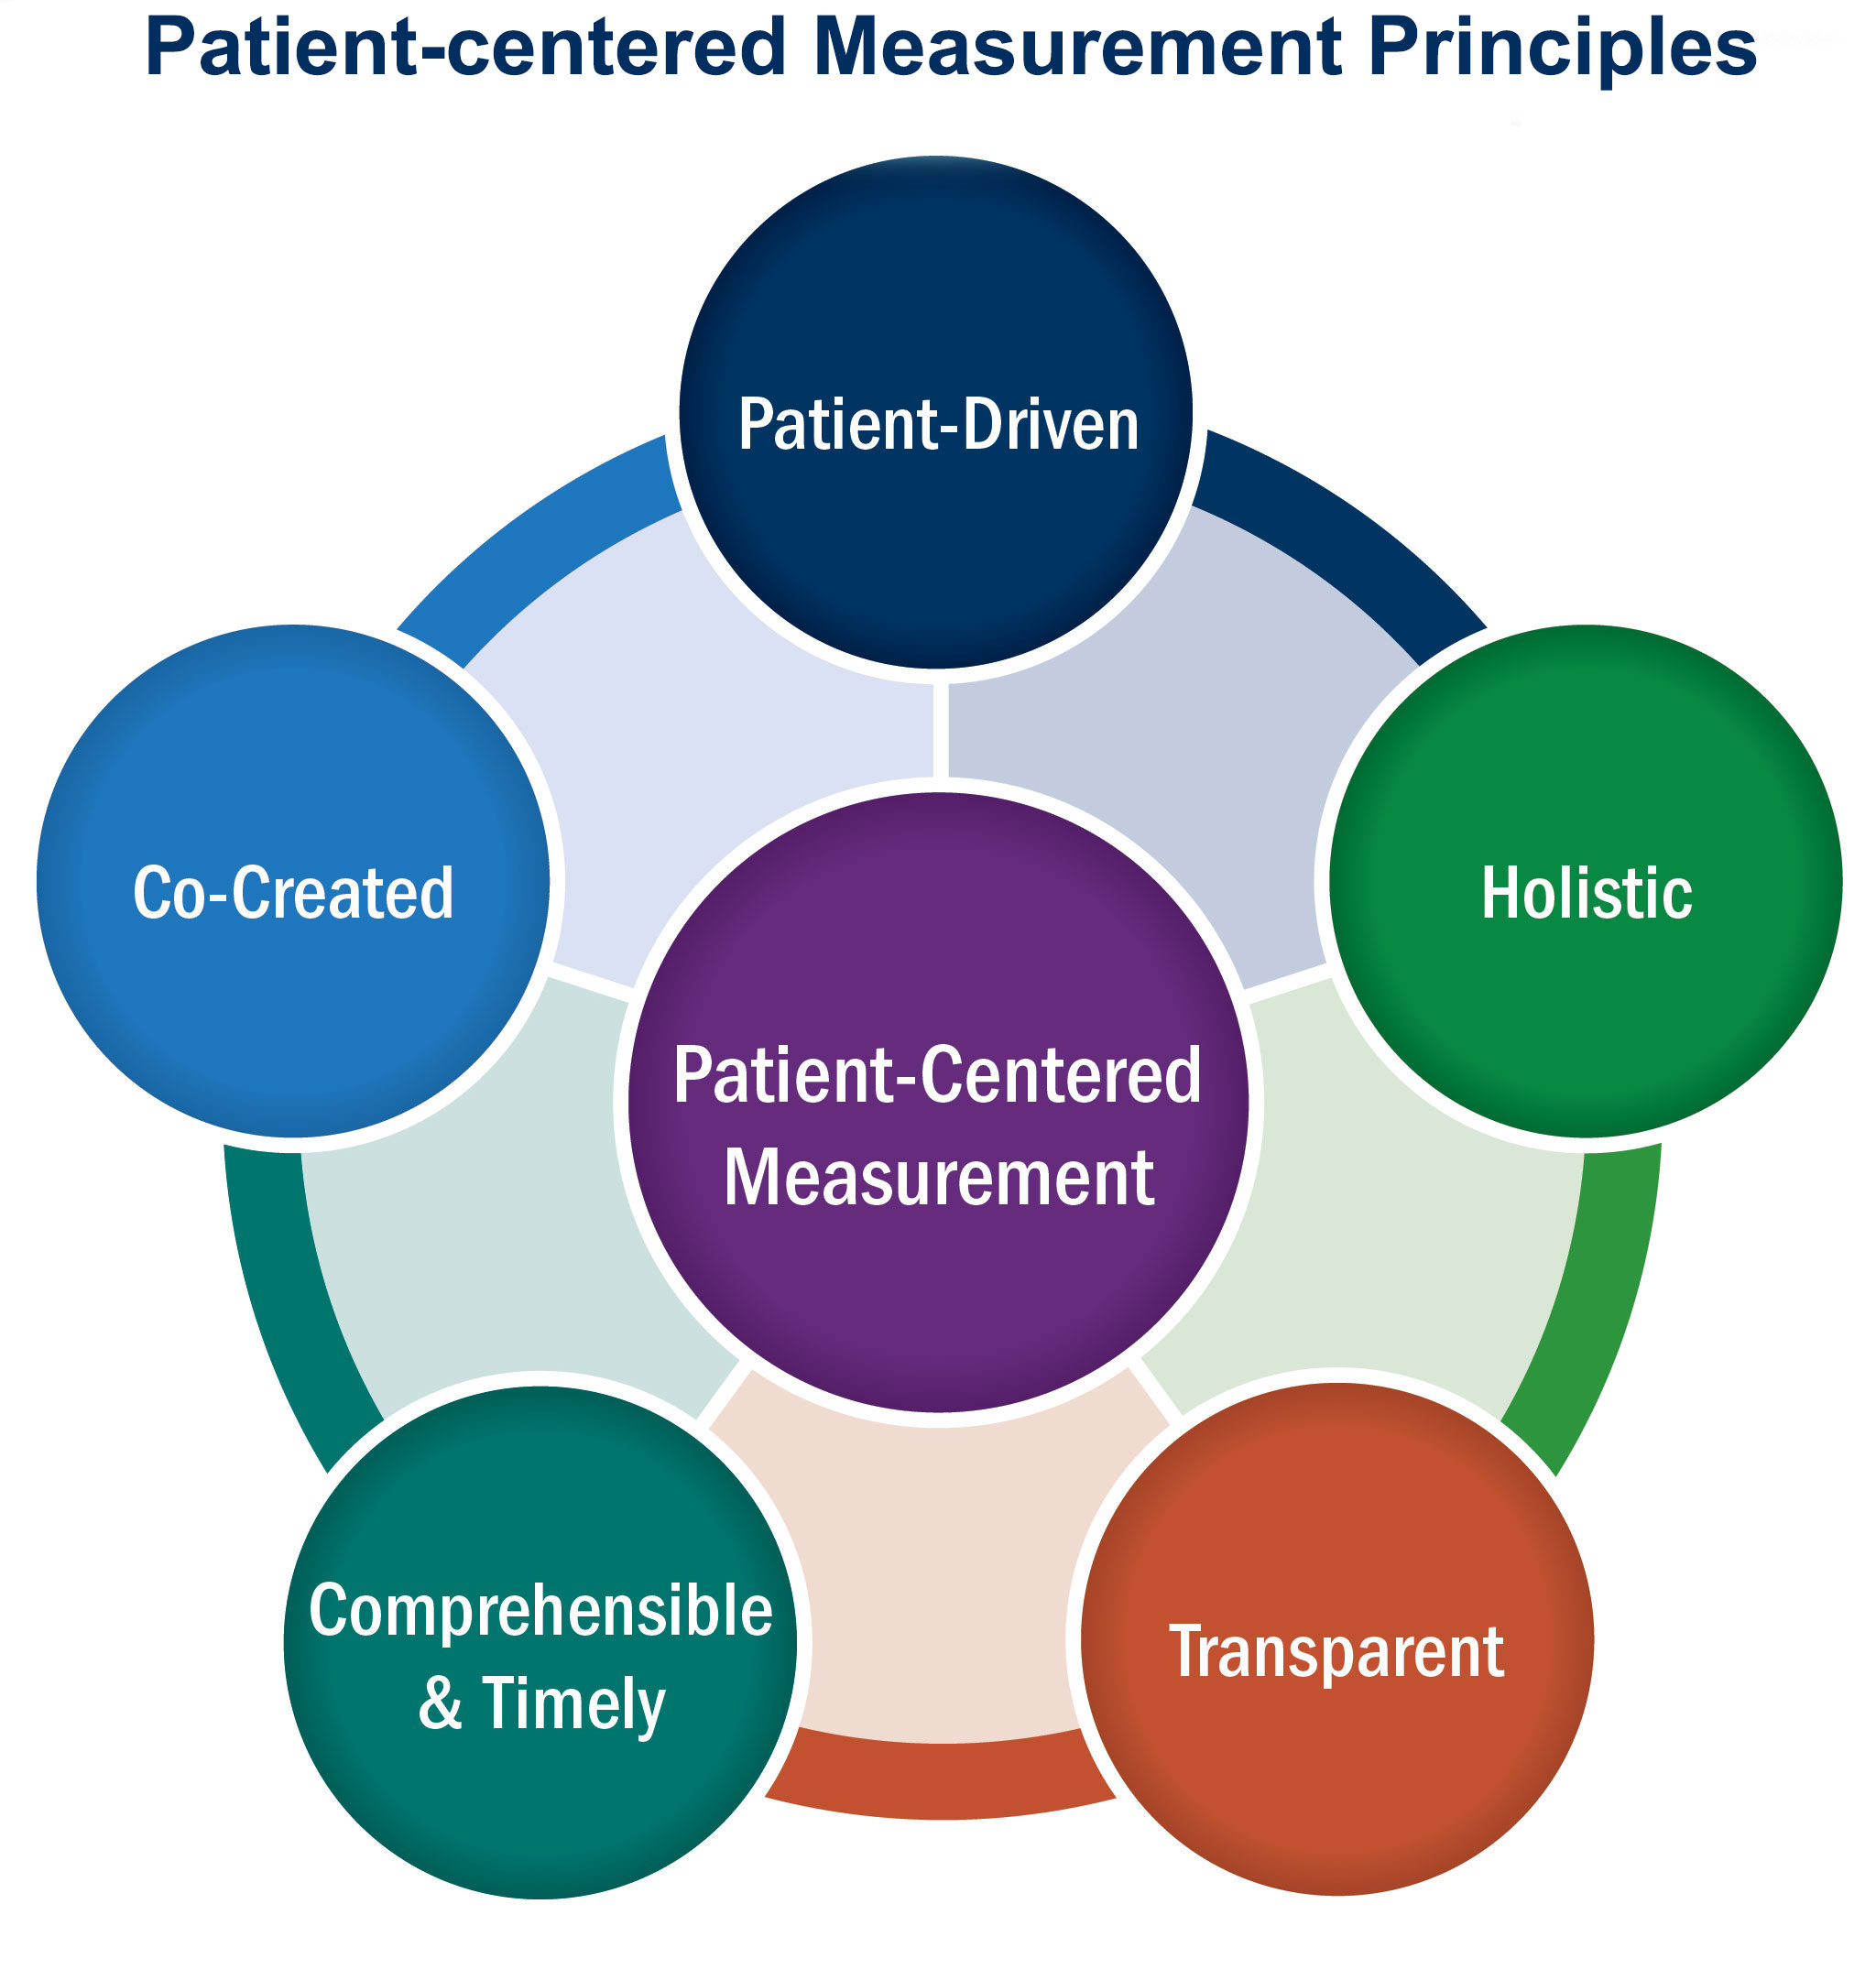 Graphic: Patient-centered measurement